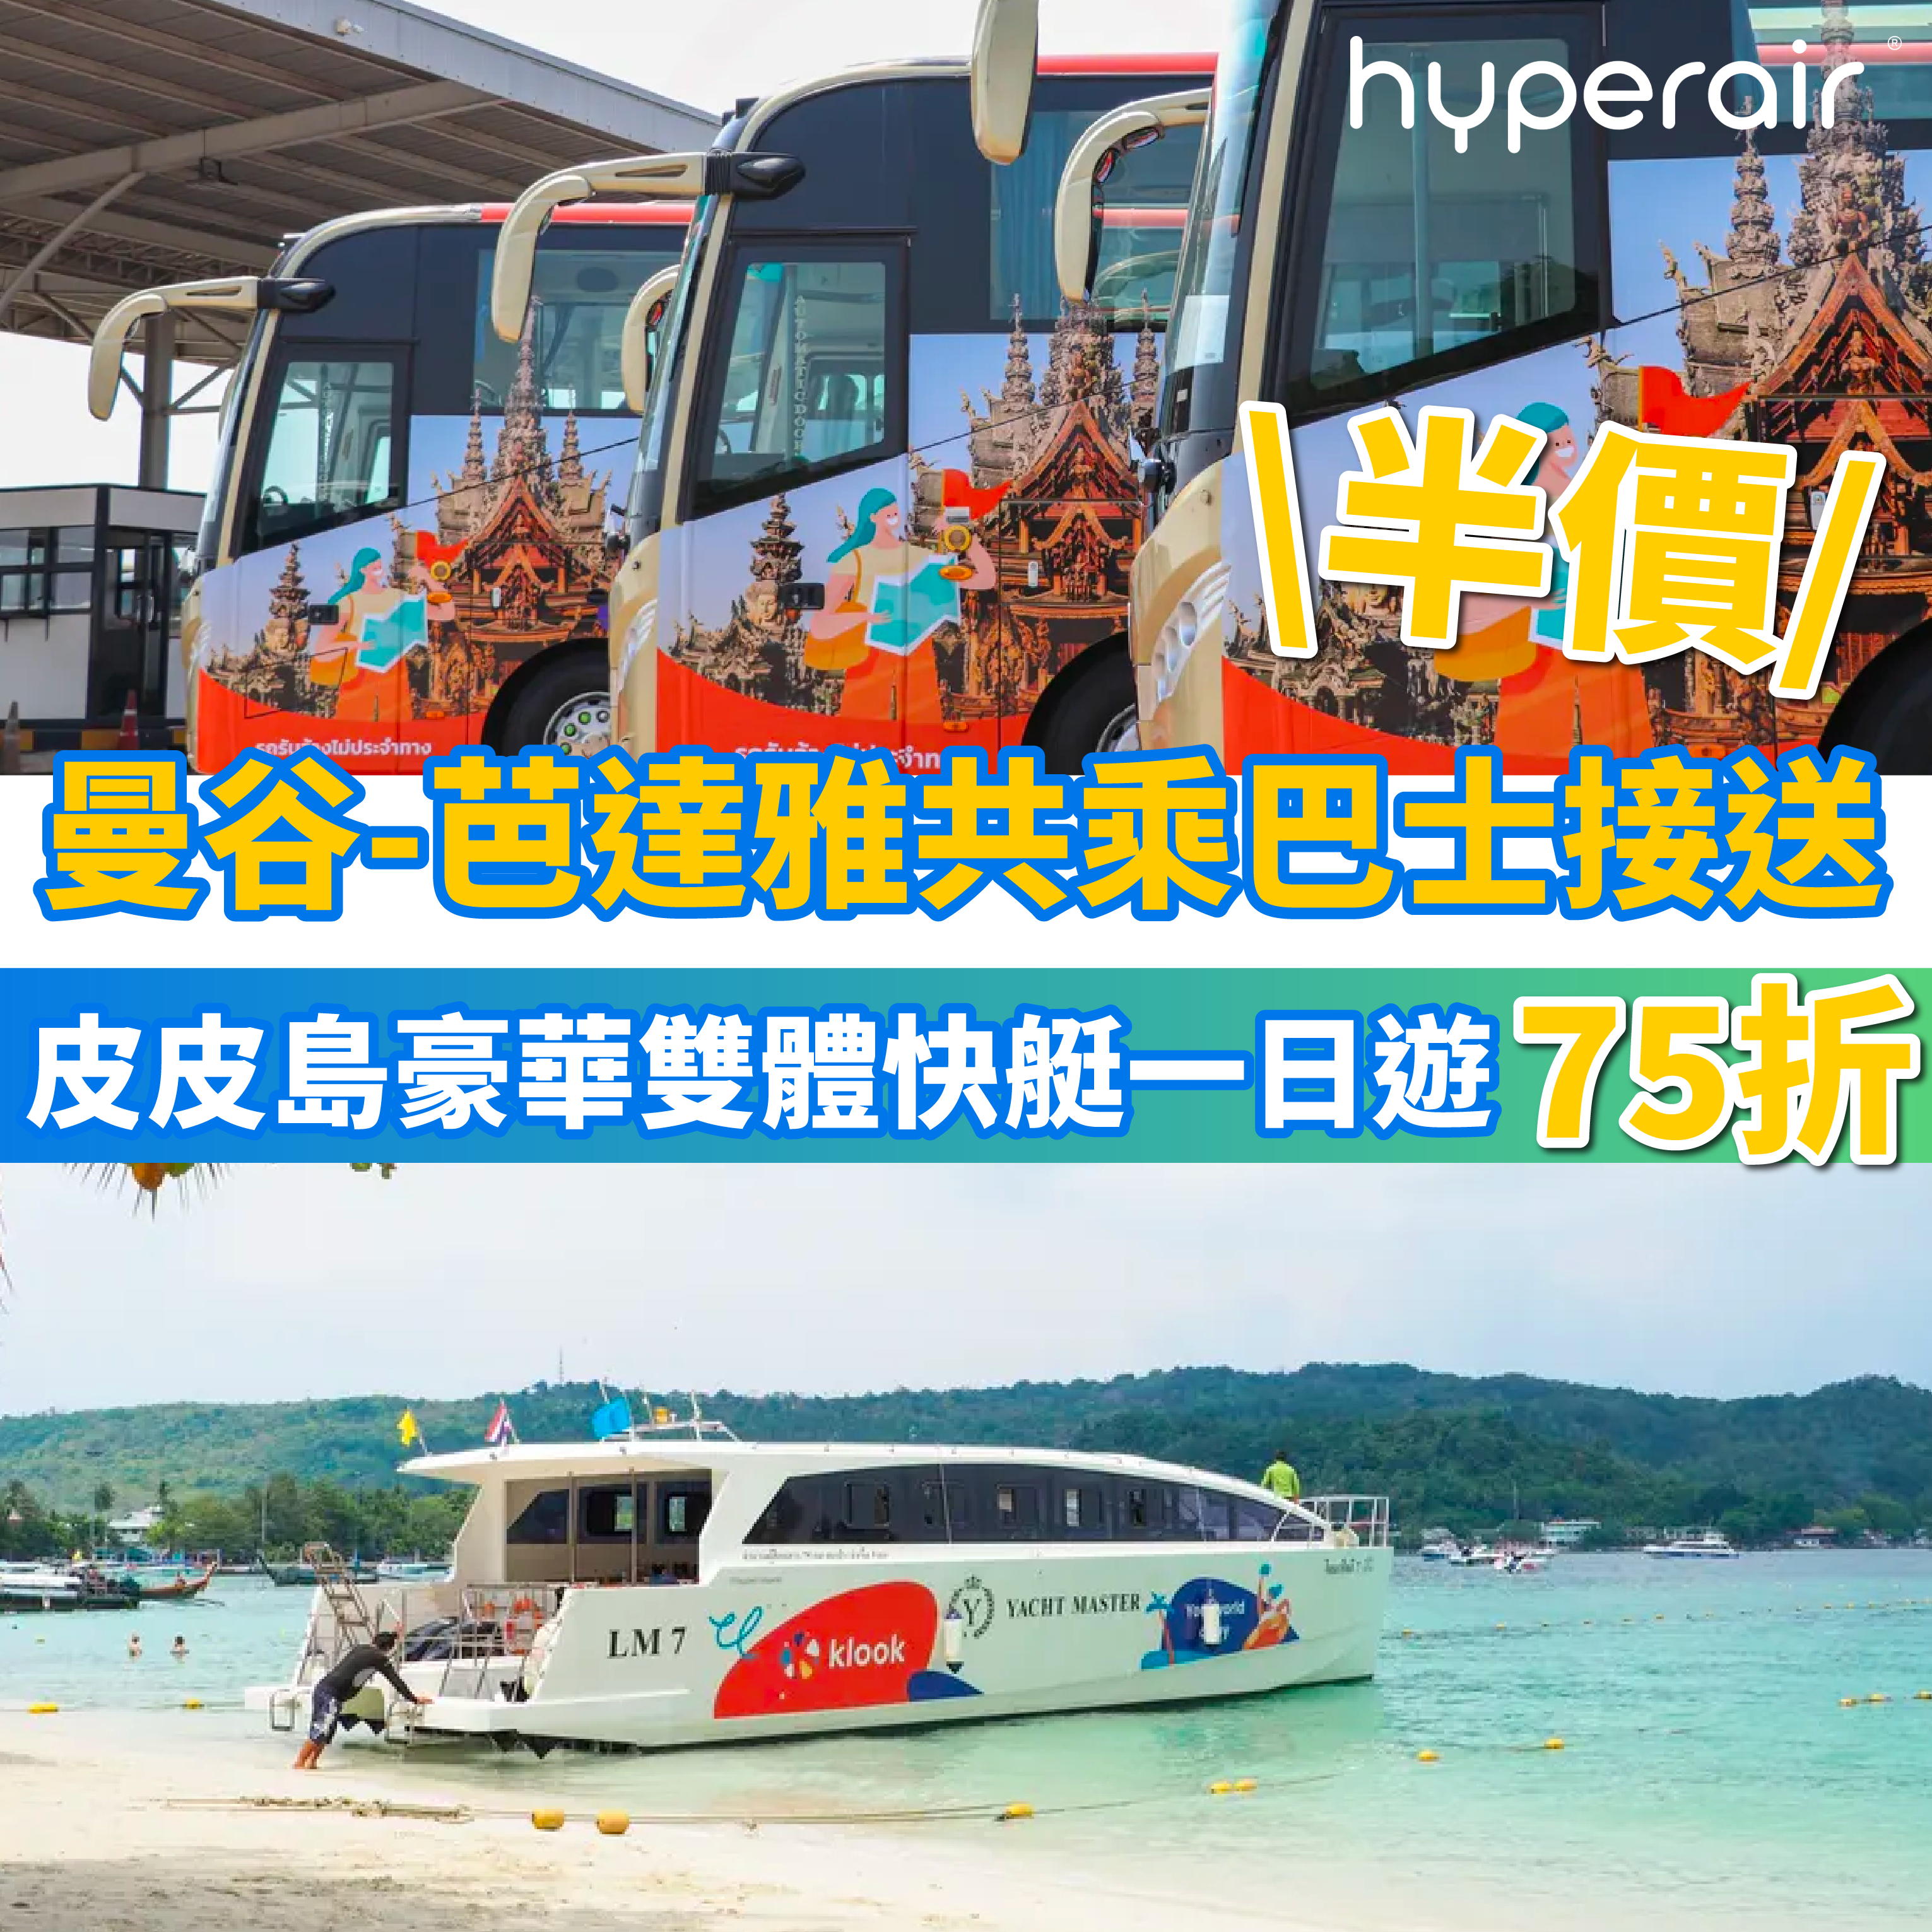 3月17日 9PM 曼谷 芭達雅共乘巴士接送，低至半價！皮皮島豪華雙體快艇一日遊 ，低至75折！